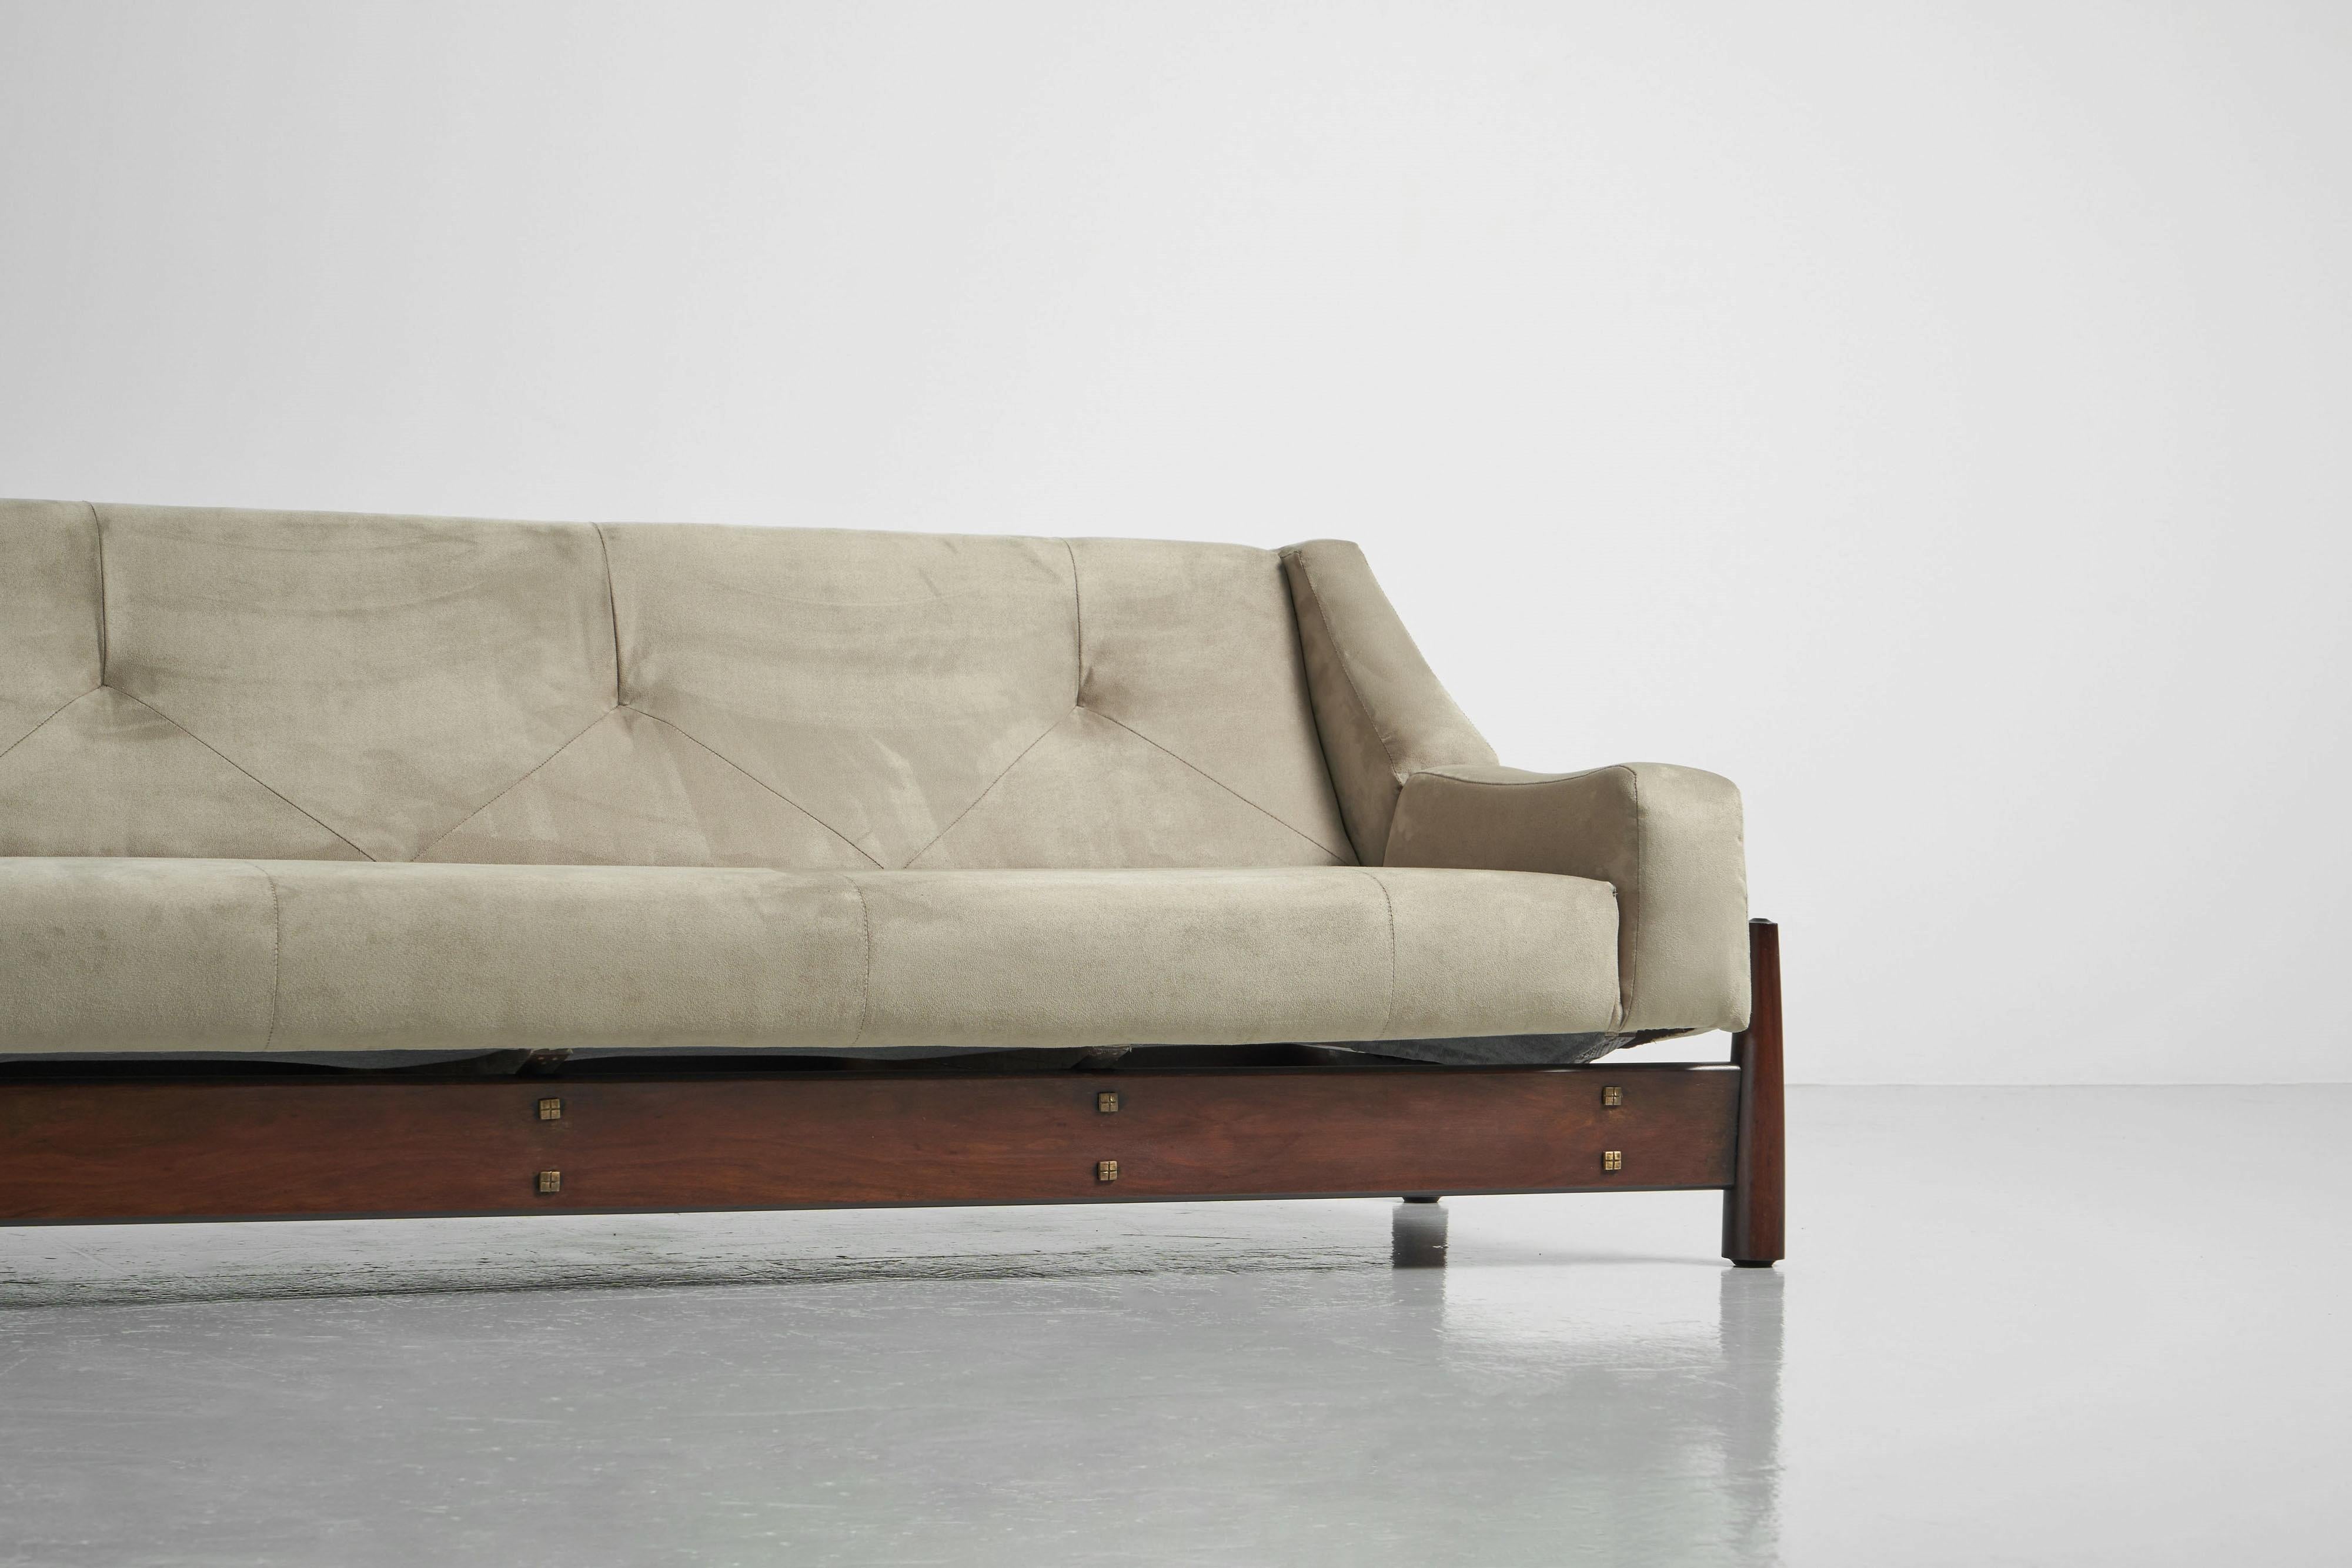 Magnifique canapé sculptural B082 fabriqué par Moveis Cimo au Brésil en 1960. Ce canapé est à la fois volumineux et ludique, avec un solide cadre en bois de Jatoba. Le cadre ressemble à un rectangle, et à chaque coin, il y a de fins pieds effilés